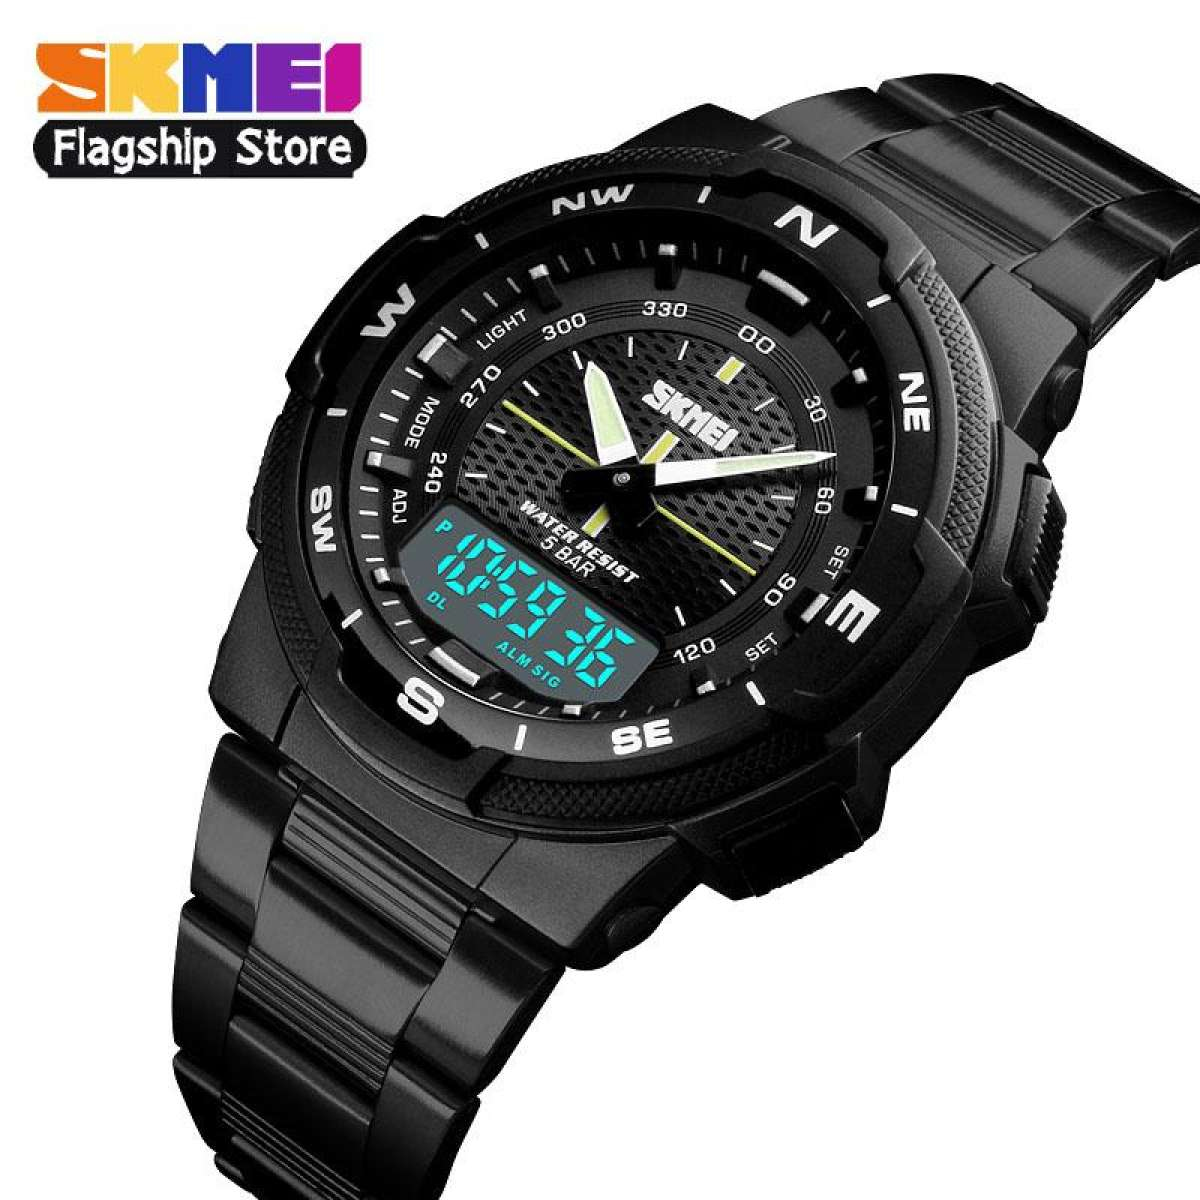 Đồng hồ thể thao SKMEI 1370 cho nam đồng hồ đeo tay điện tử đa năng bằng thép không gỉ chống nước thời trang thường ngày